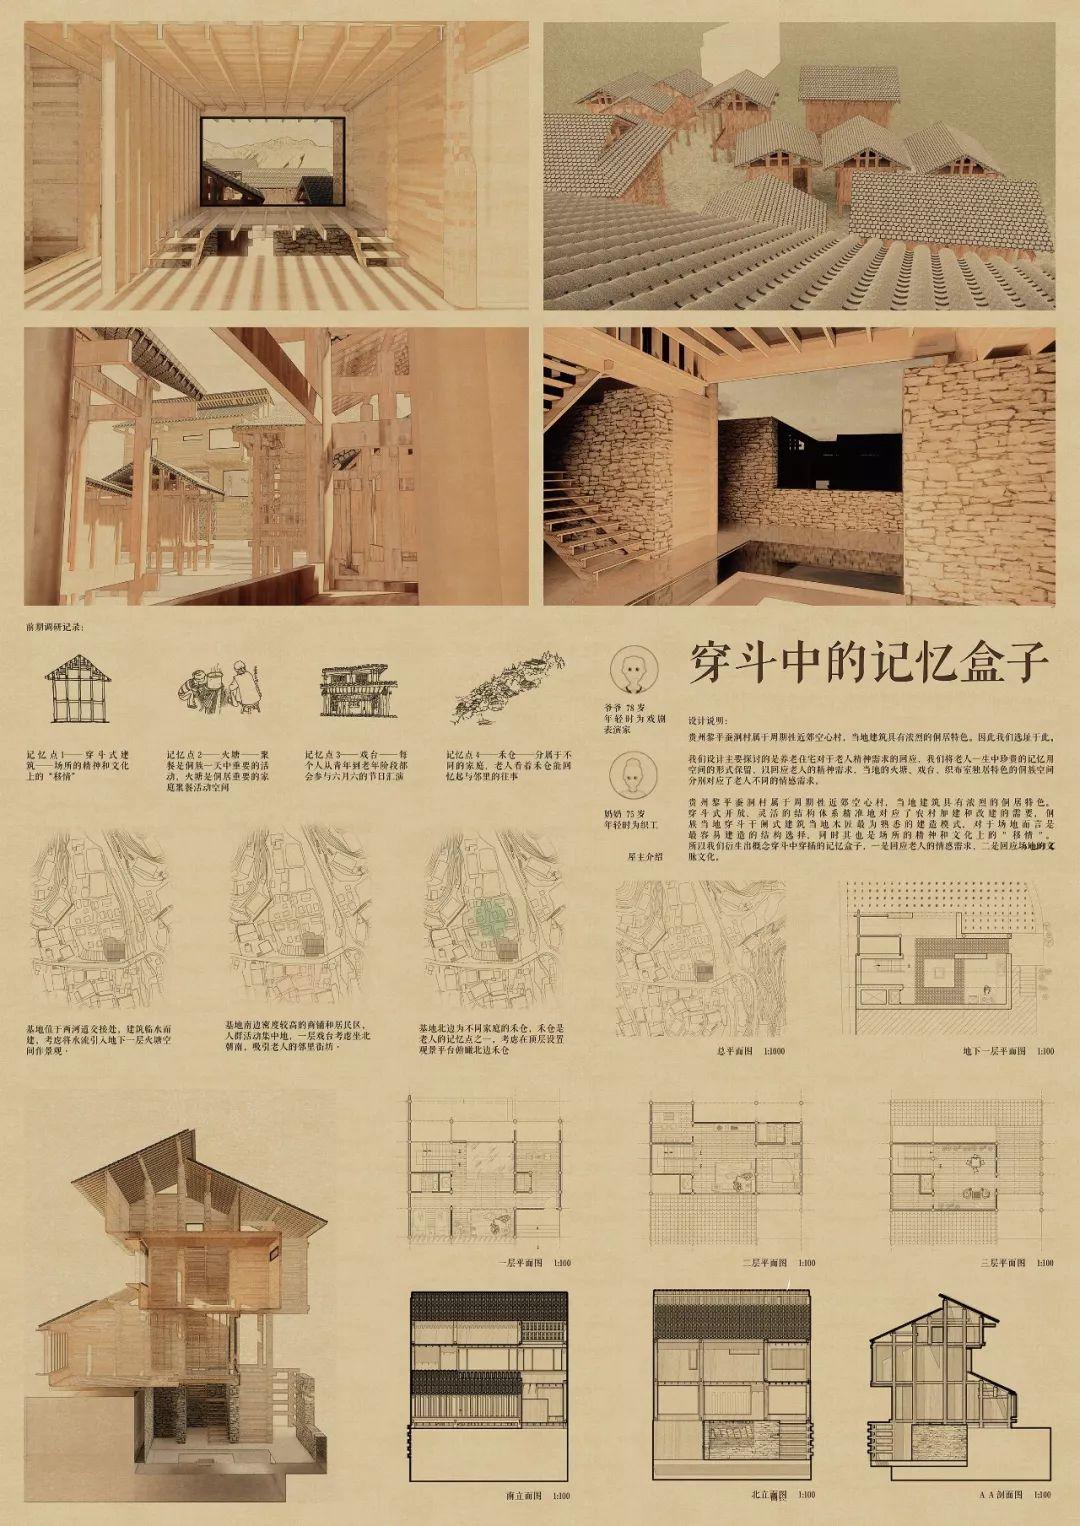 入围名单 |《建筑师》杂志·2019“天作奖”国际大学生建筑设计竞赛